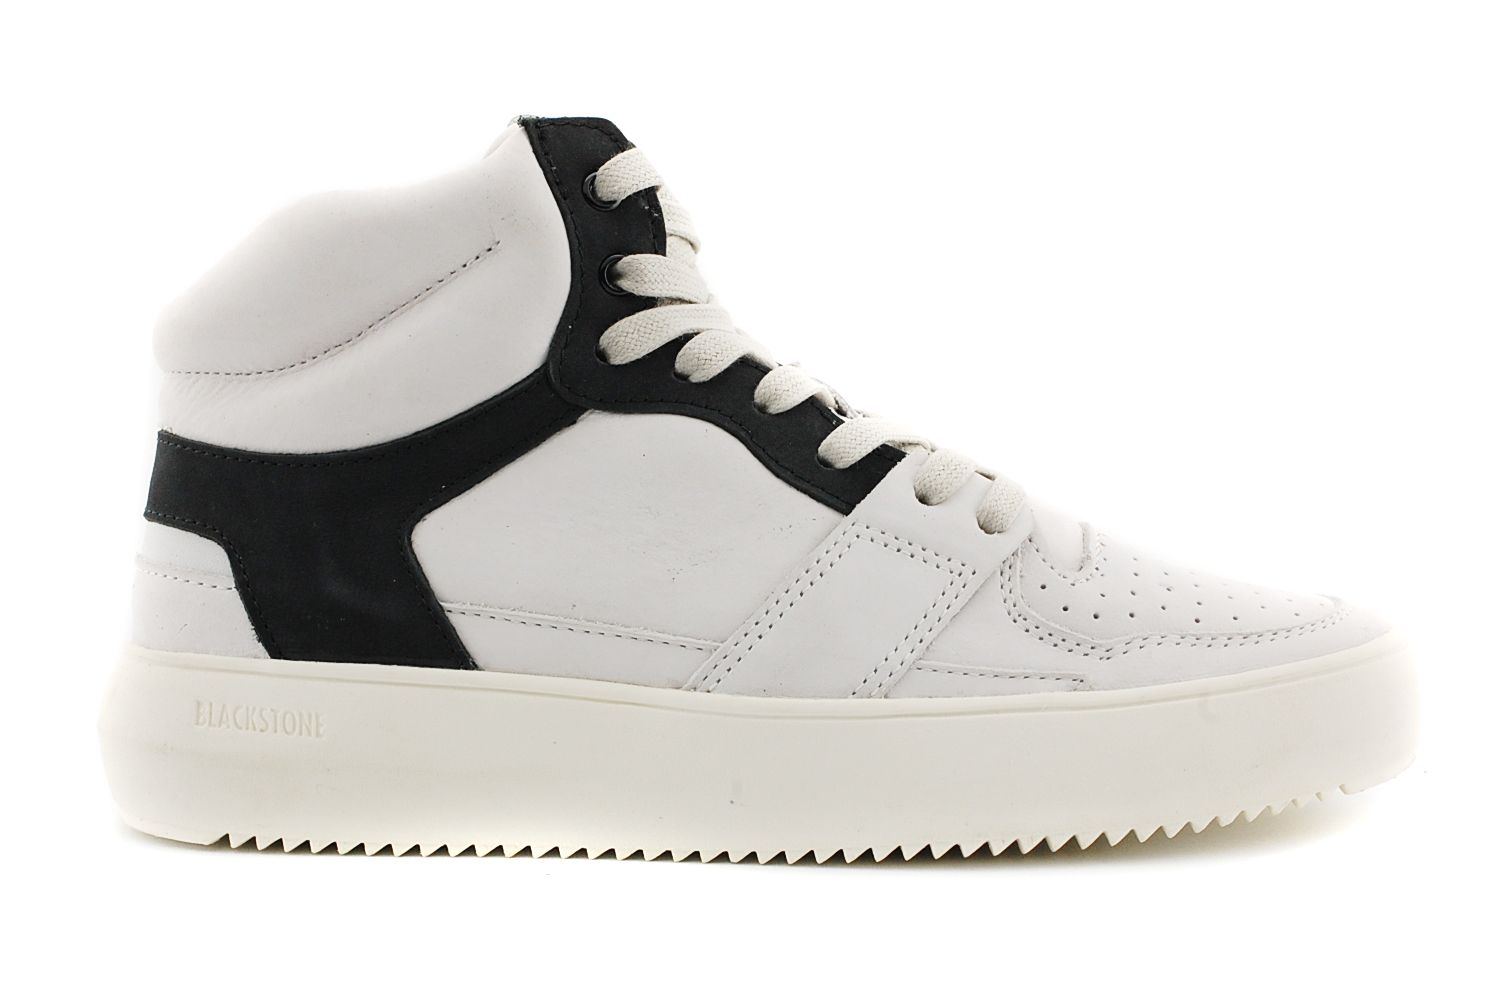 bedreiging borst Krijger Blackstone YG02 sneaker halfhoog veter wit/zwart combi online kopen bij  Past Schoenen.